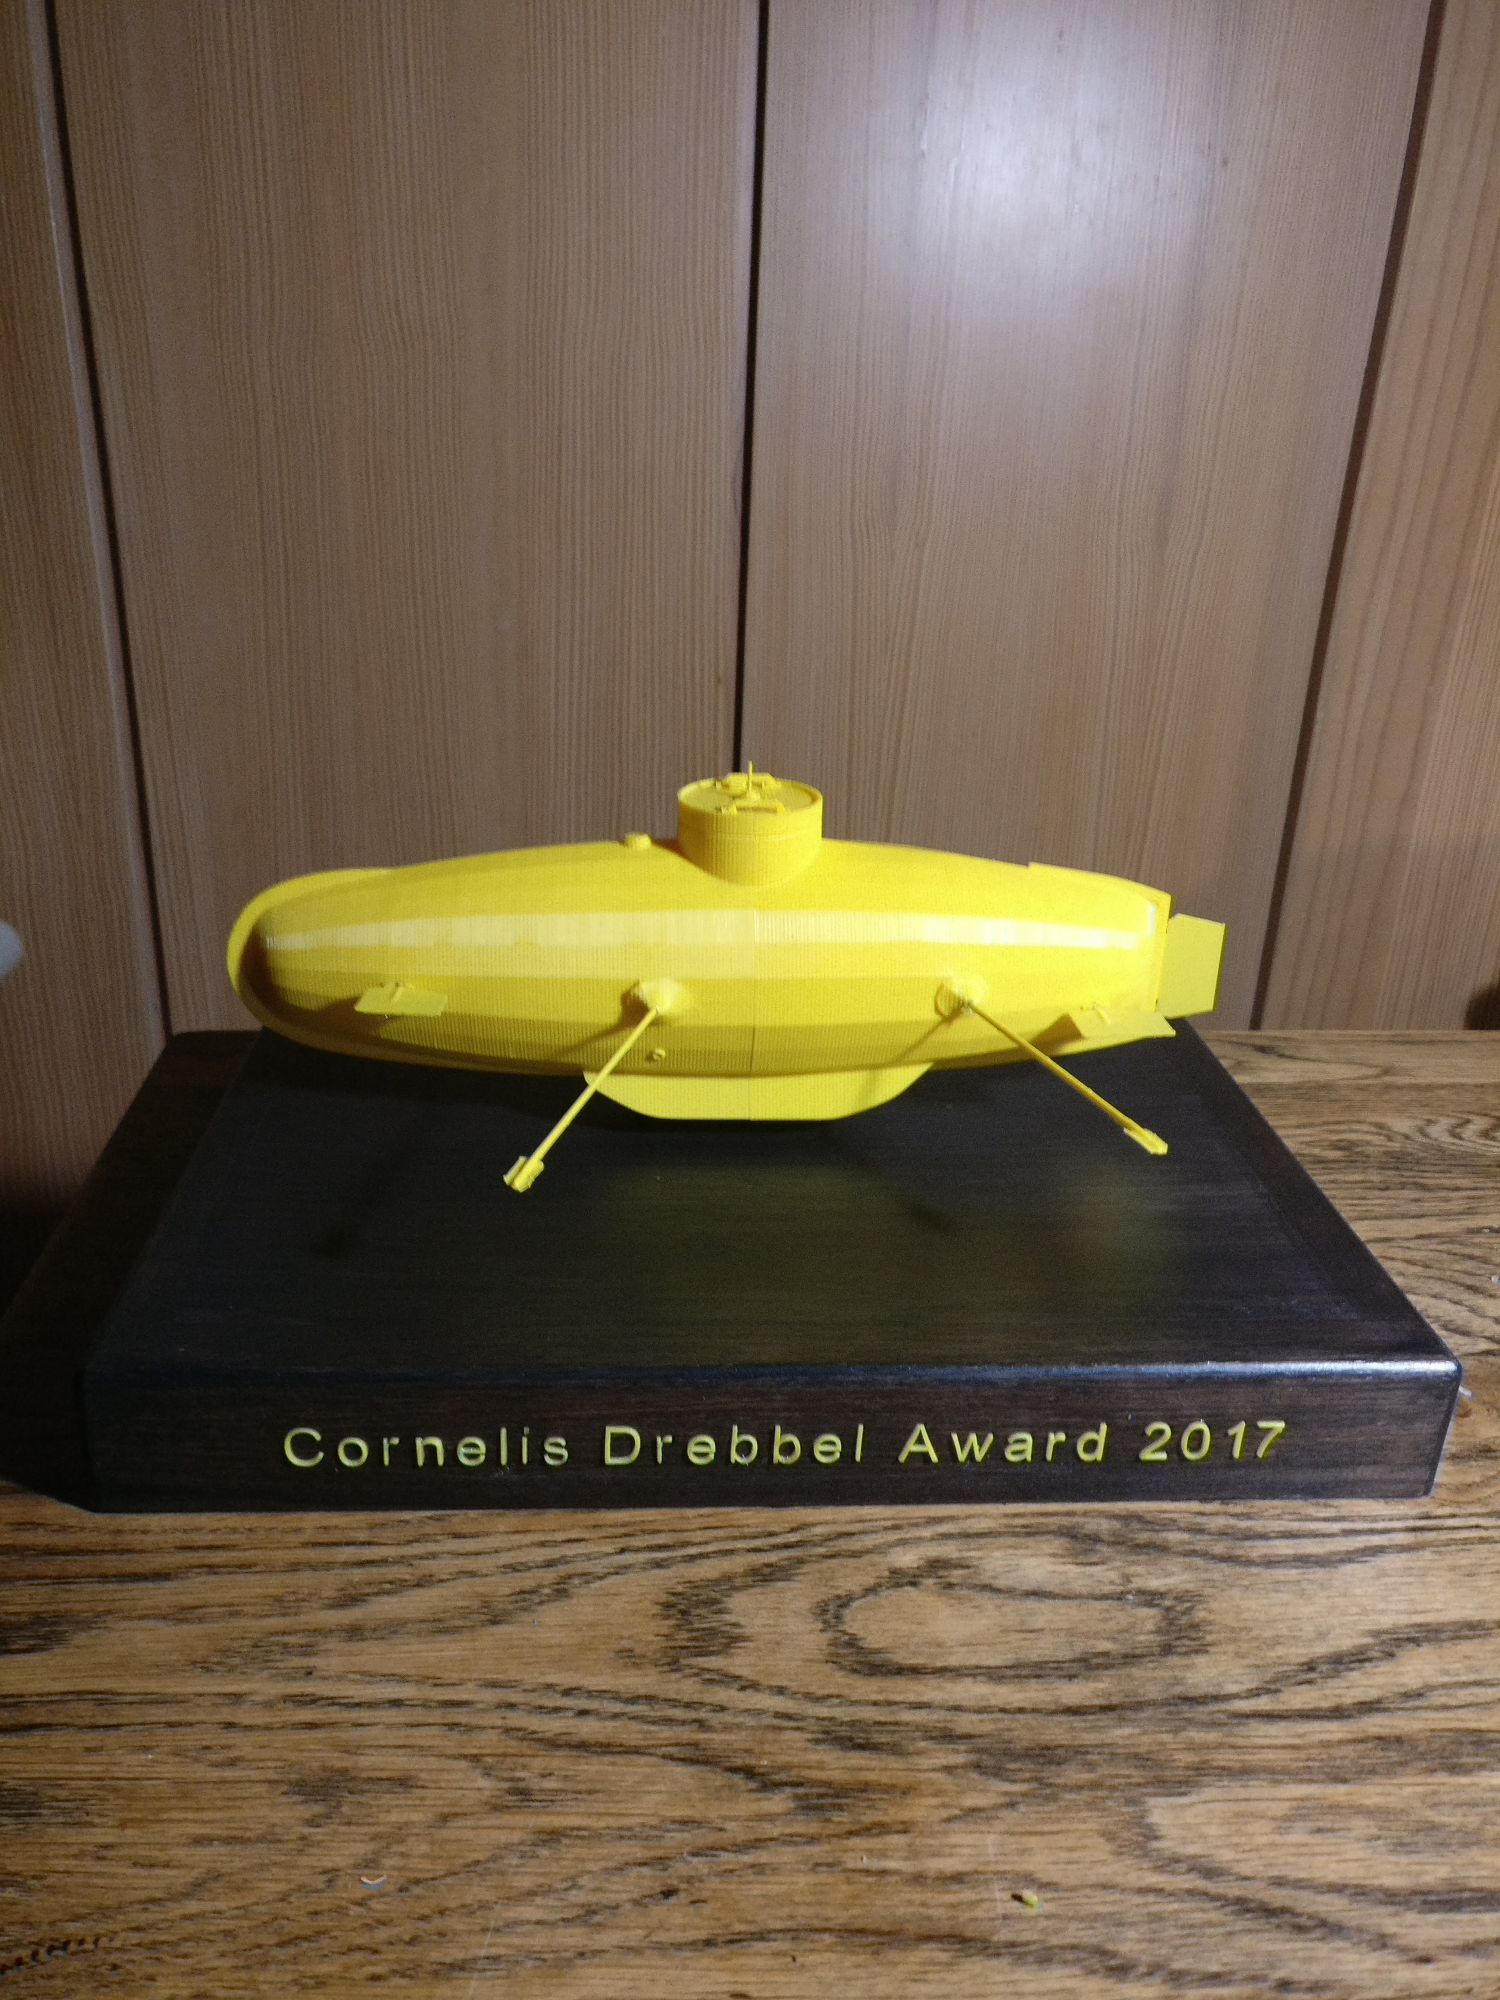 De Cornelis Drebbel Award 2017